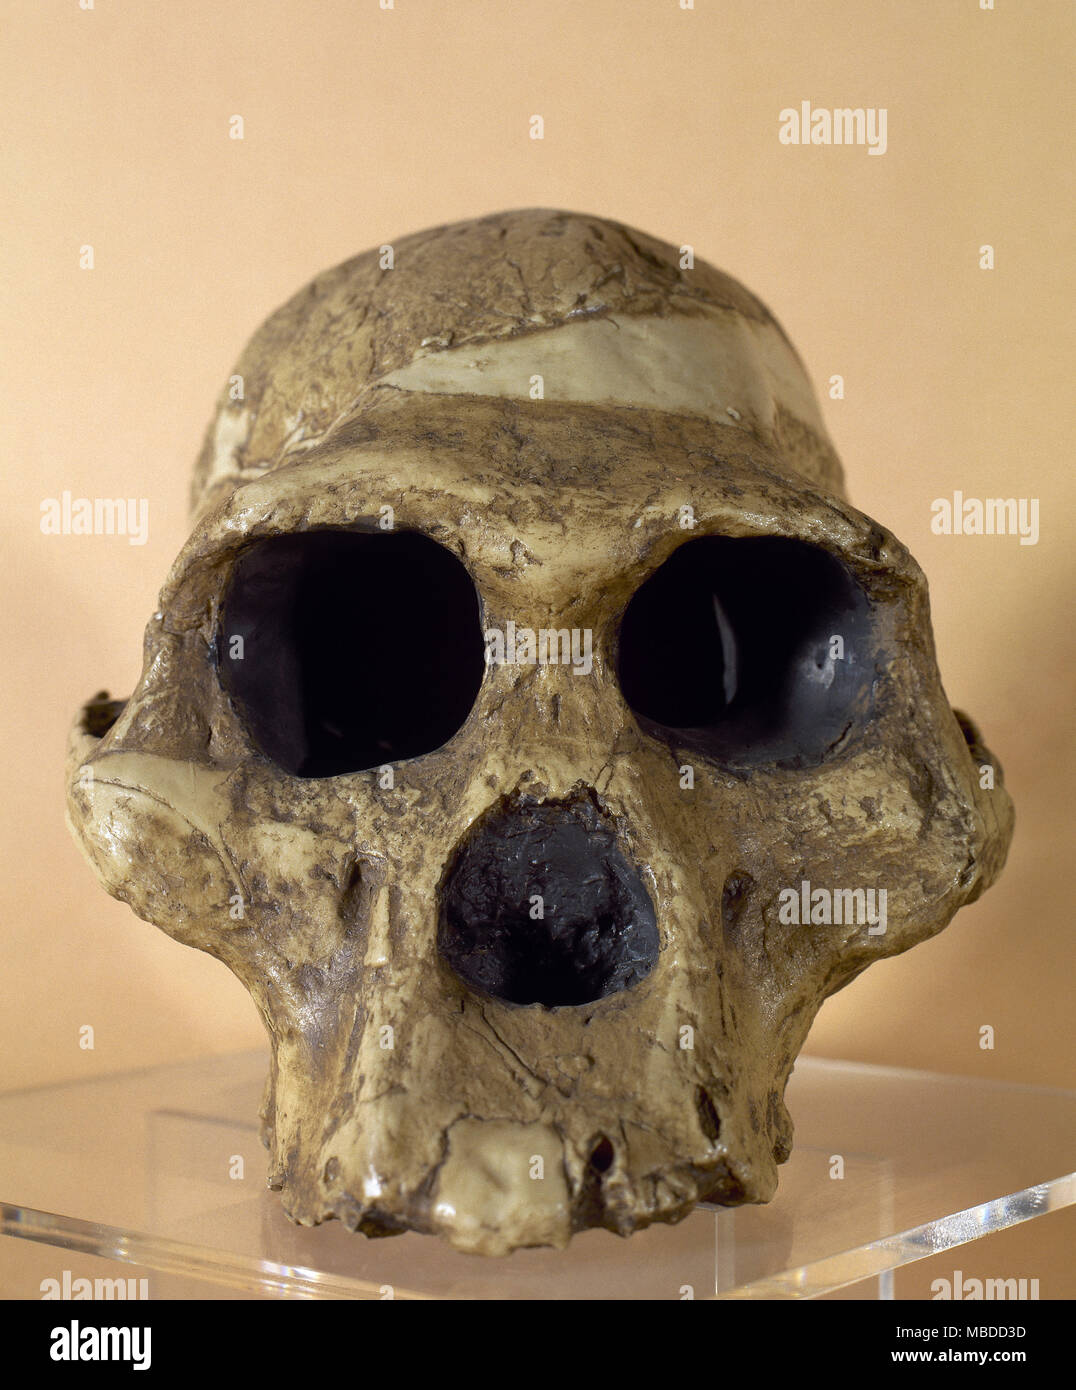 Mme ples. Reproduction d'un crâne d'un Australophitecus africanus (2,15 millions d'années). Trouvé dans de Sterkfontein, Afrique du Sud. Musée Archéologique de Catalogne, Barcelone, Espagne. Banque D'Images